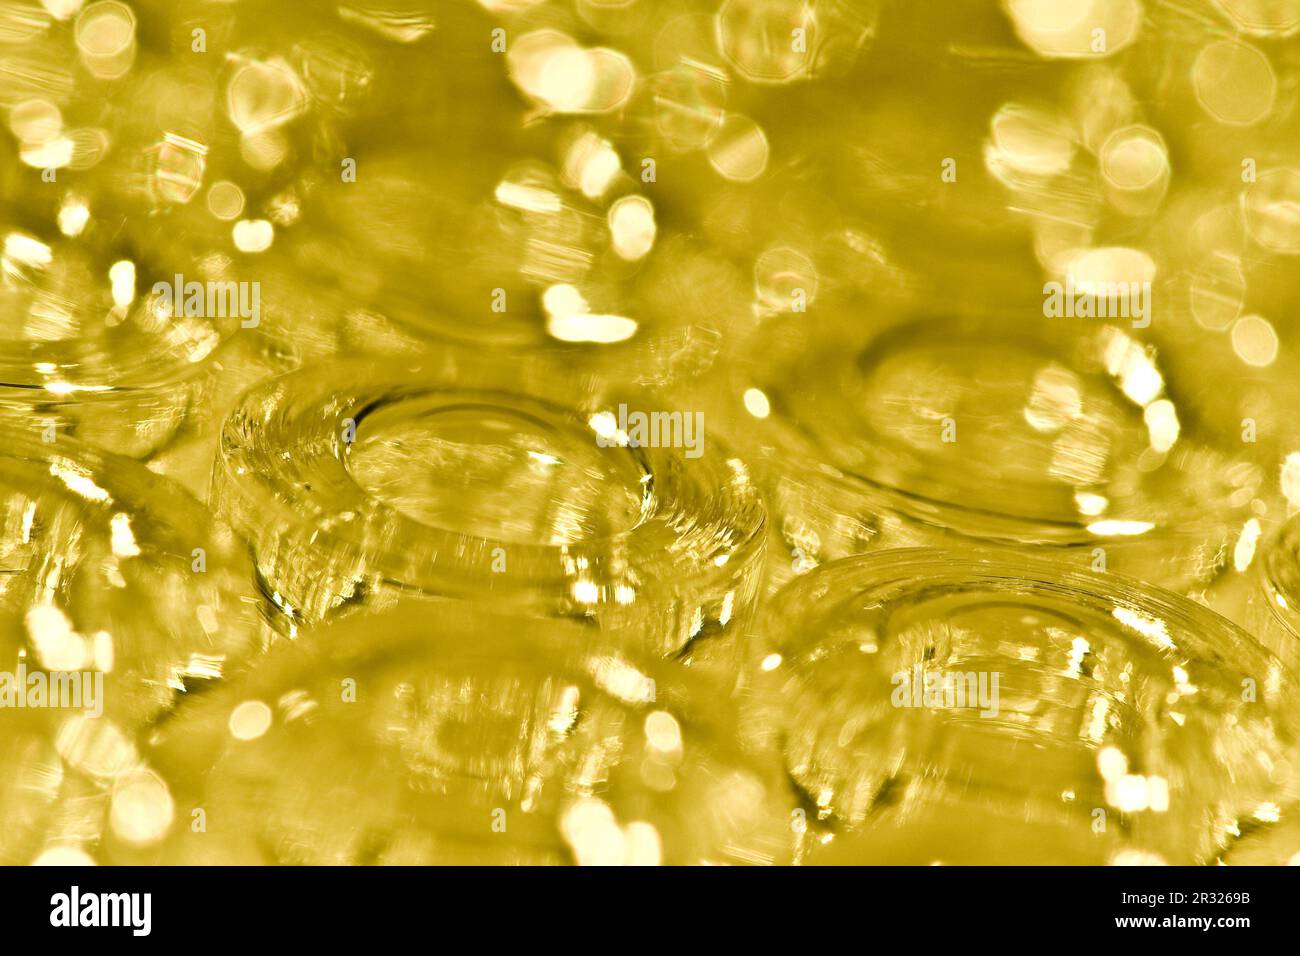 detail makro aufnahme von gelben glas ampullen Stock Photo